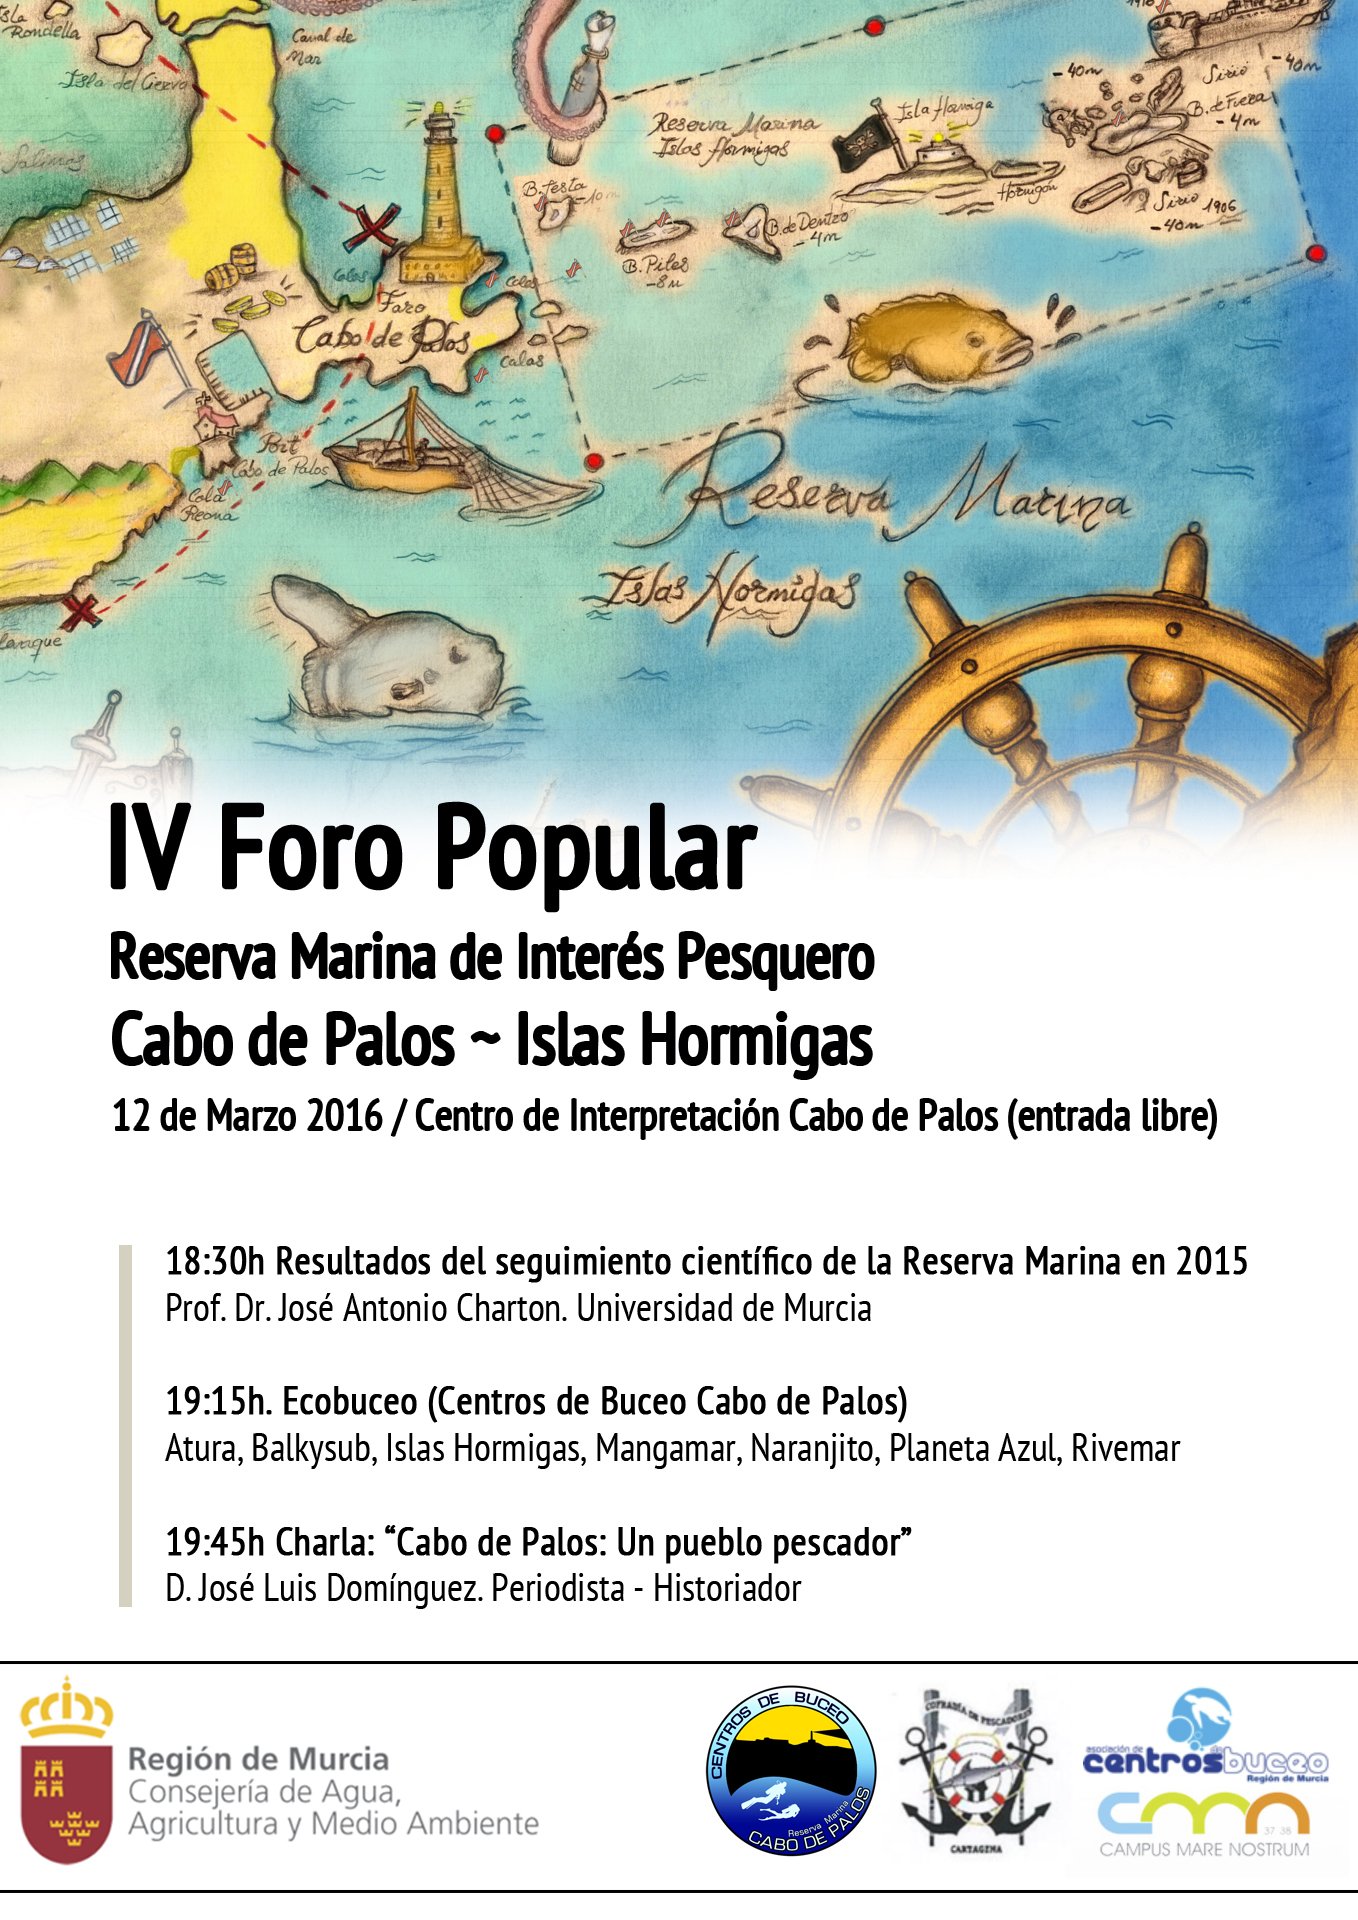 IV Foro Popular Reserva Marina de Interés Pesquero Cabo de Palos - Islas Hormigas.